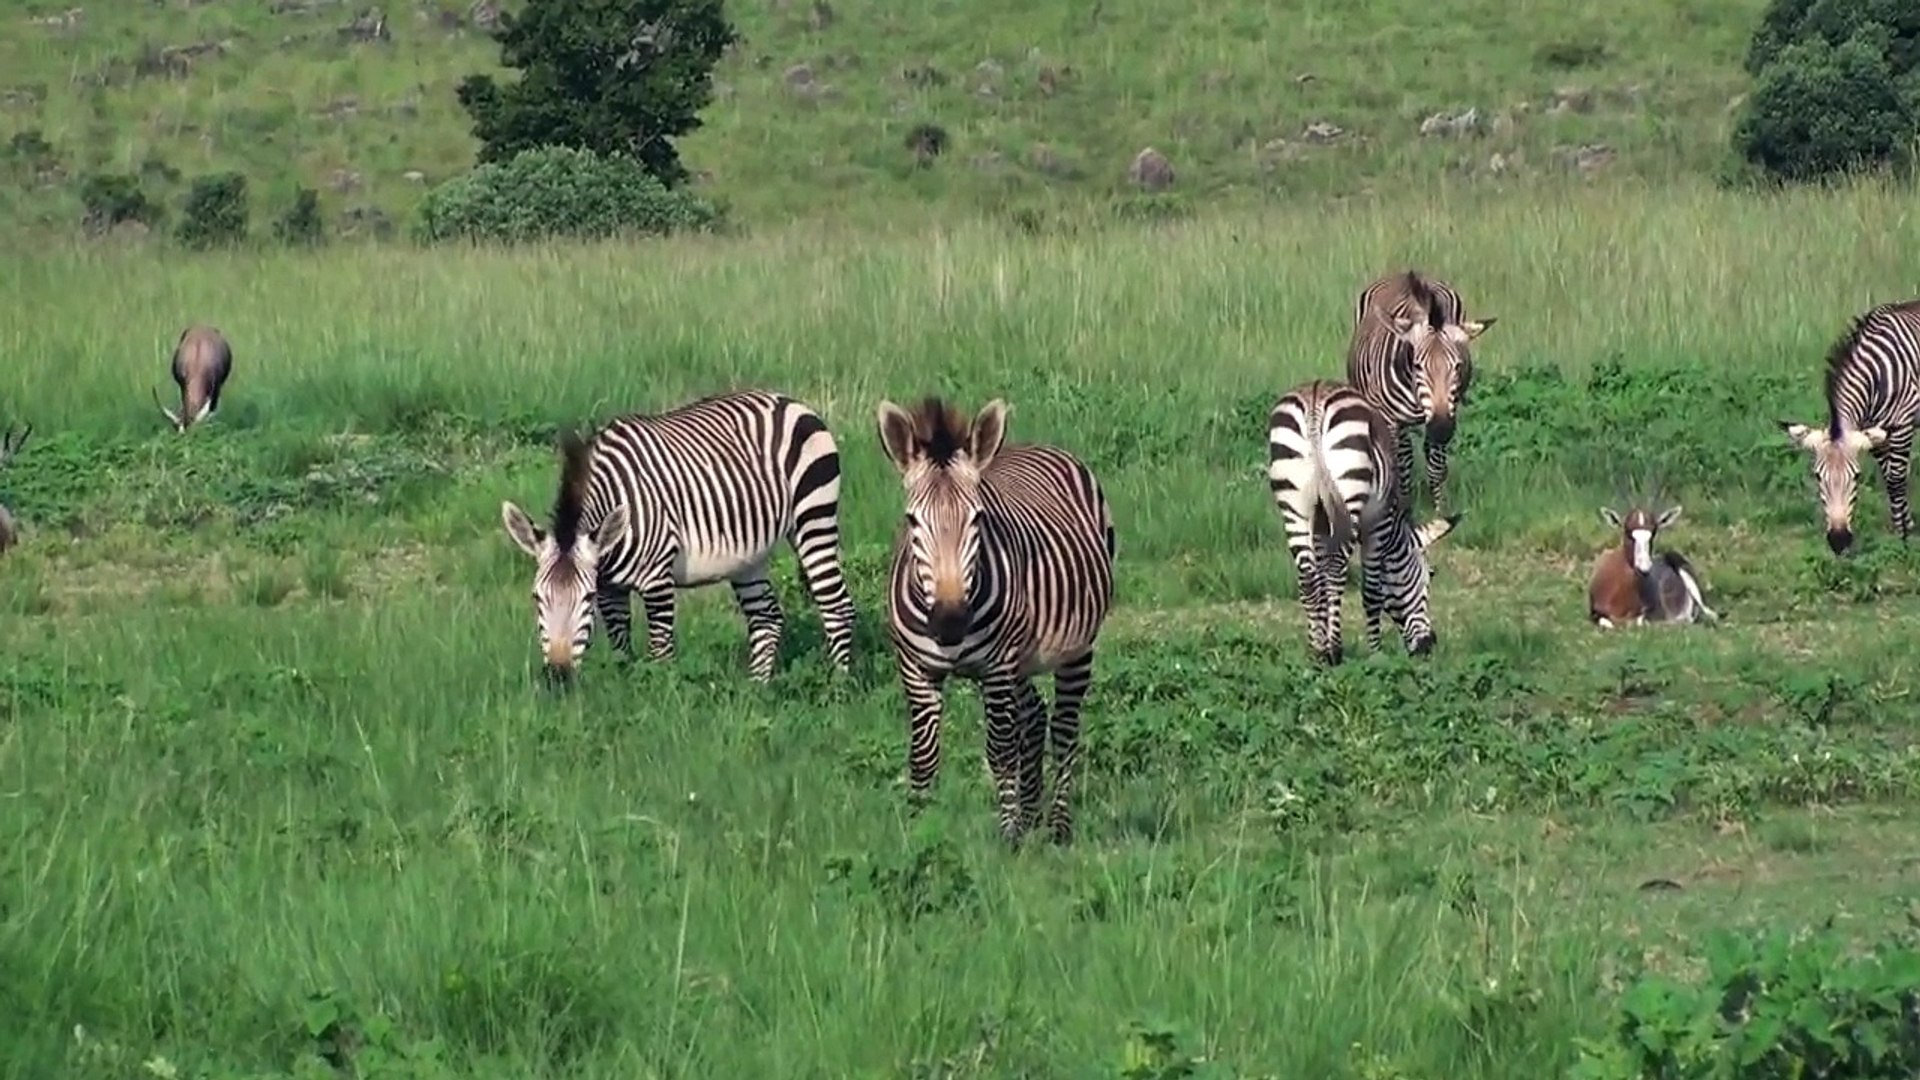 Zebra, Warthog, Ostrich, Wildebeest Grazing